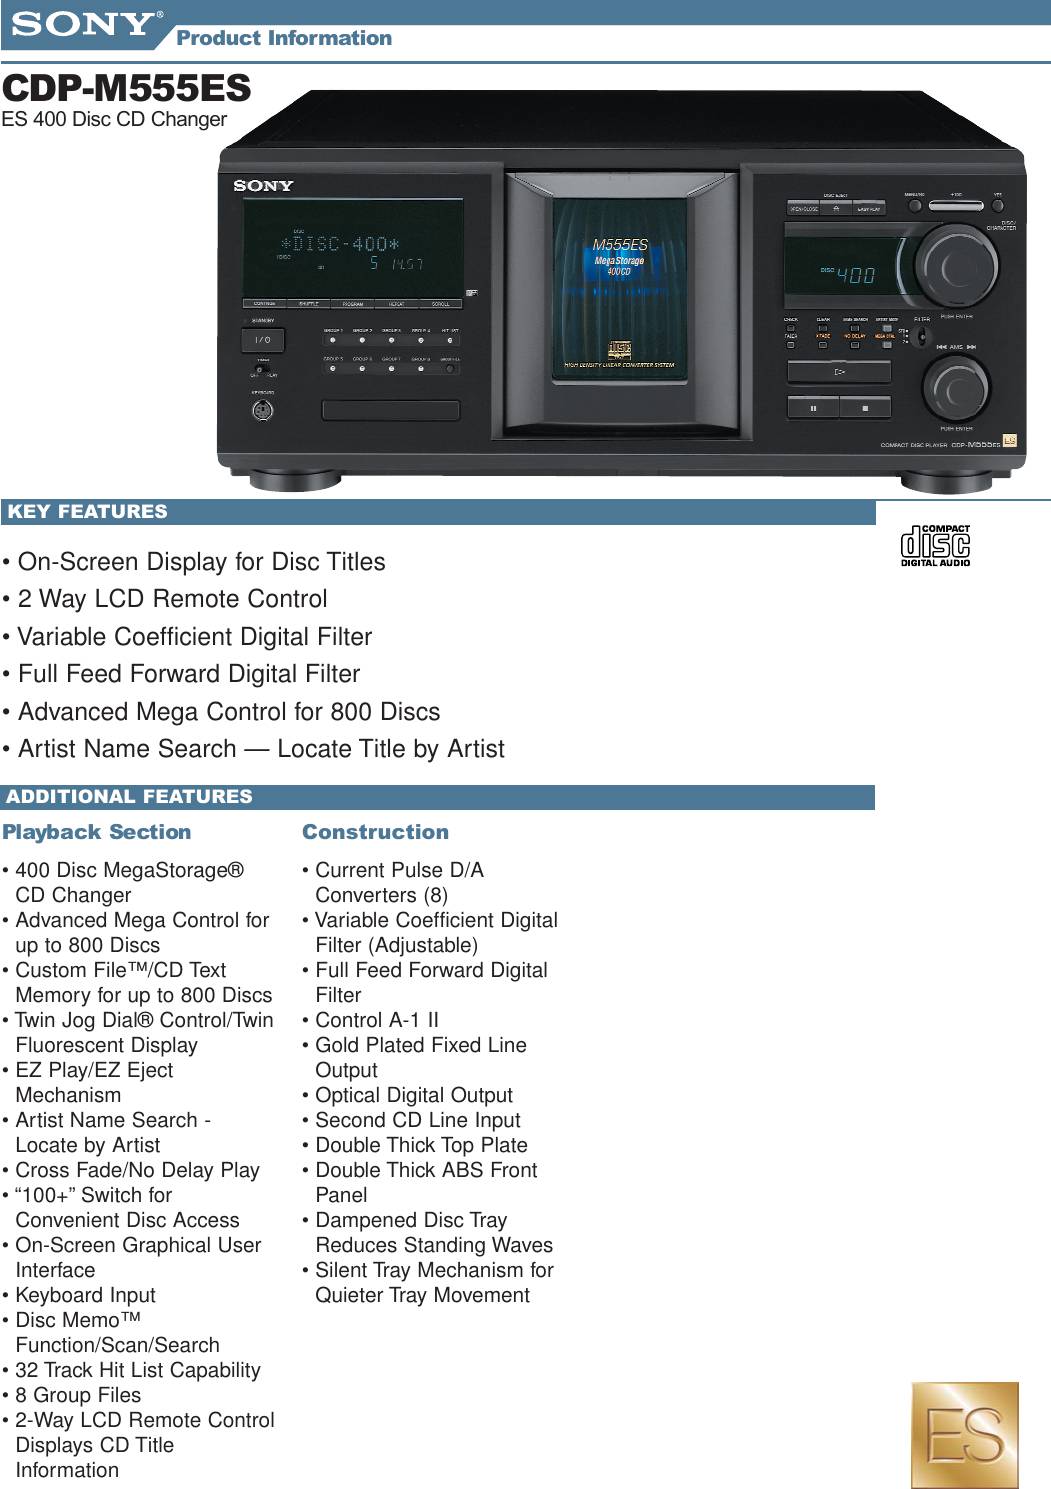 Sony CDP-M555ES